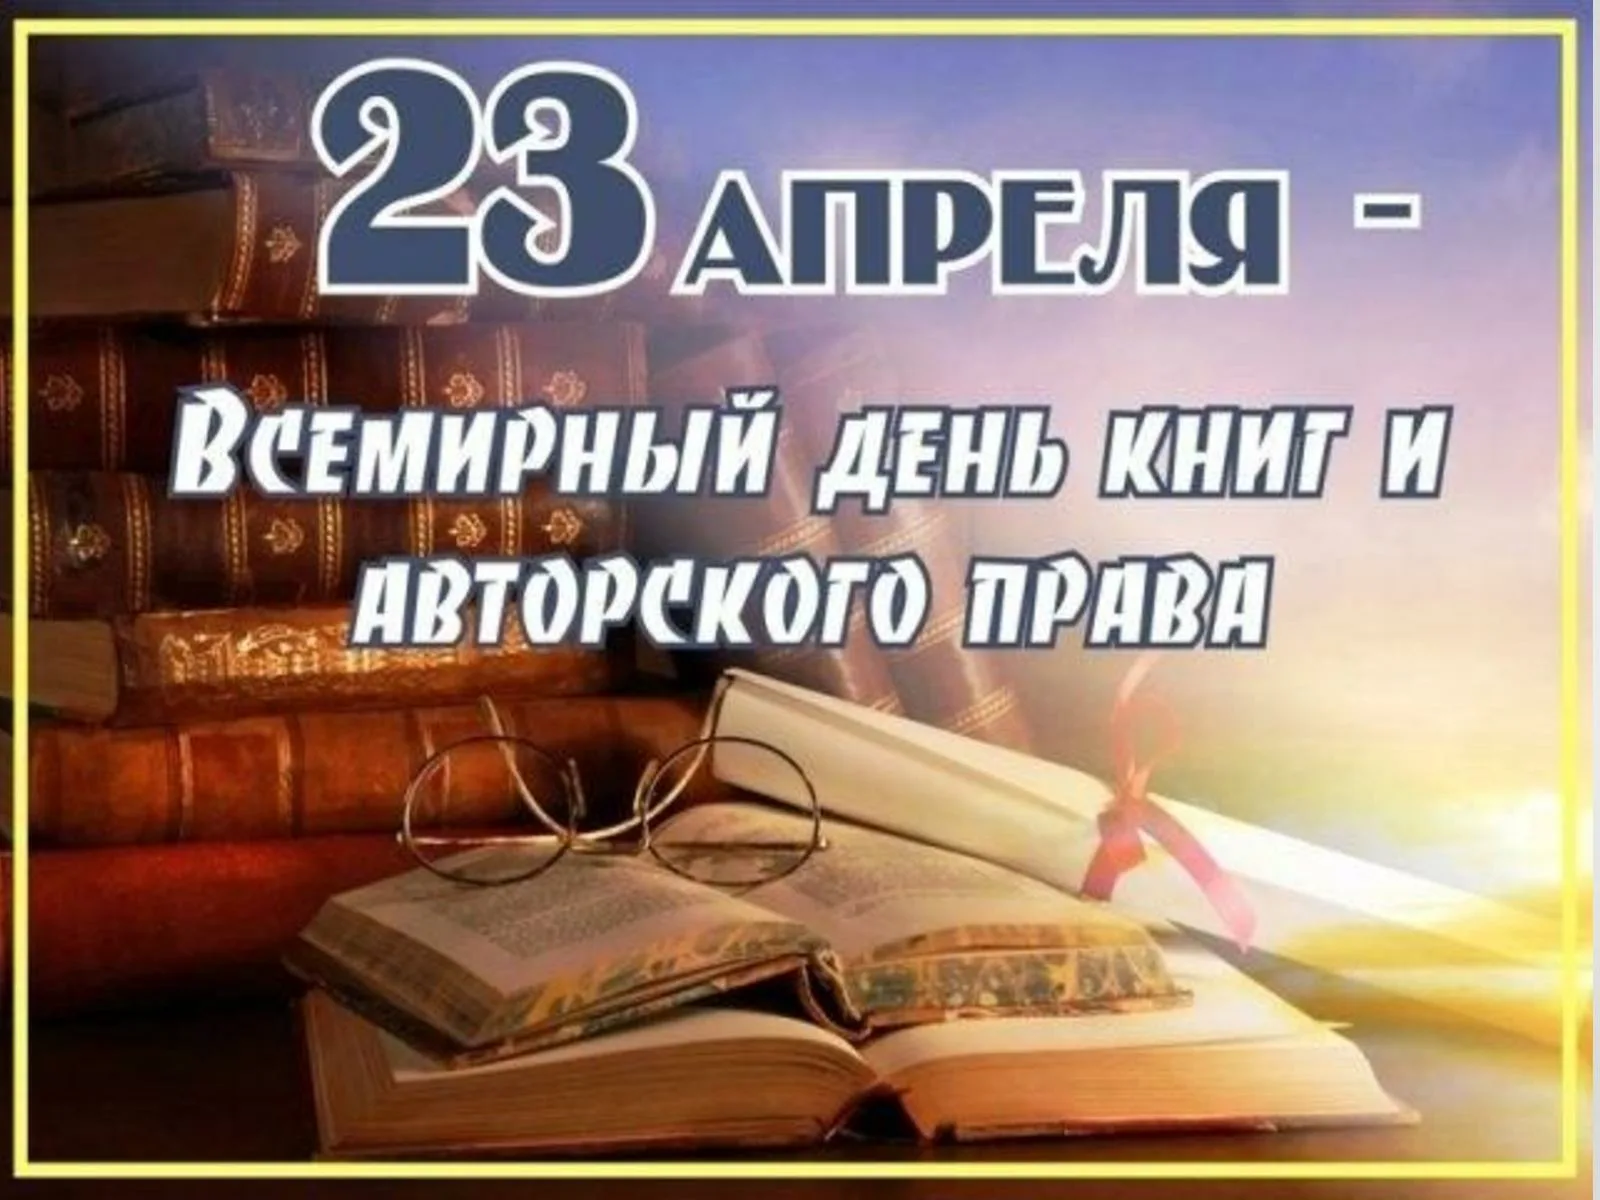 Праздник всемирный день книги. Всемирный день книги. 23 Апреля Всемирный день книги.